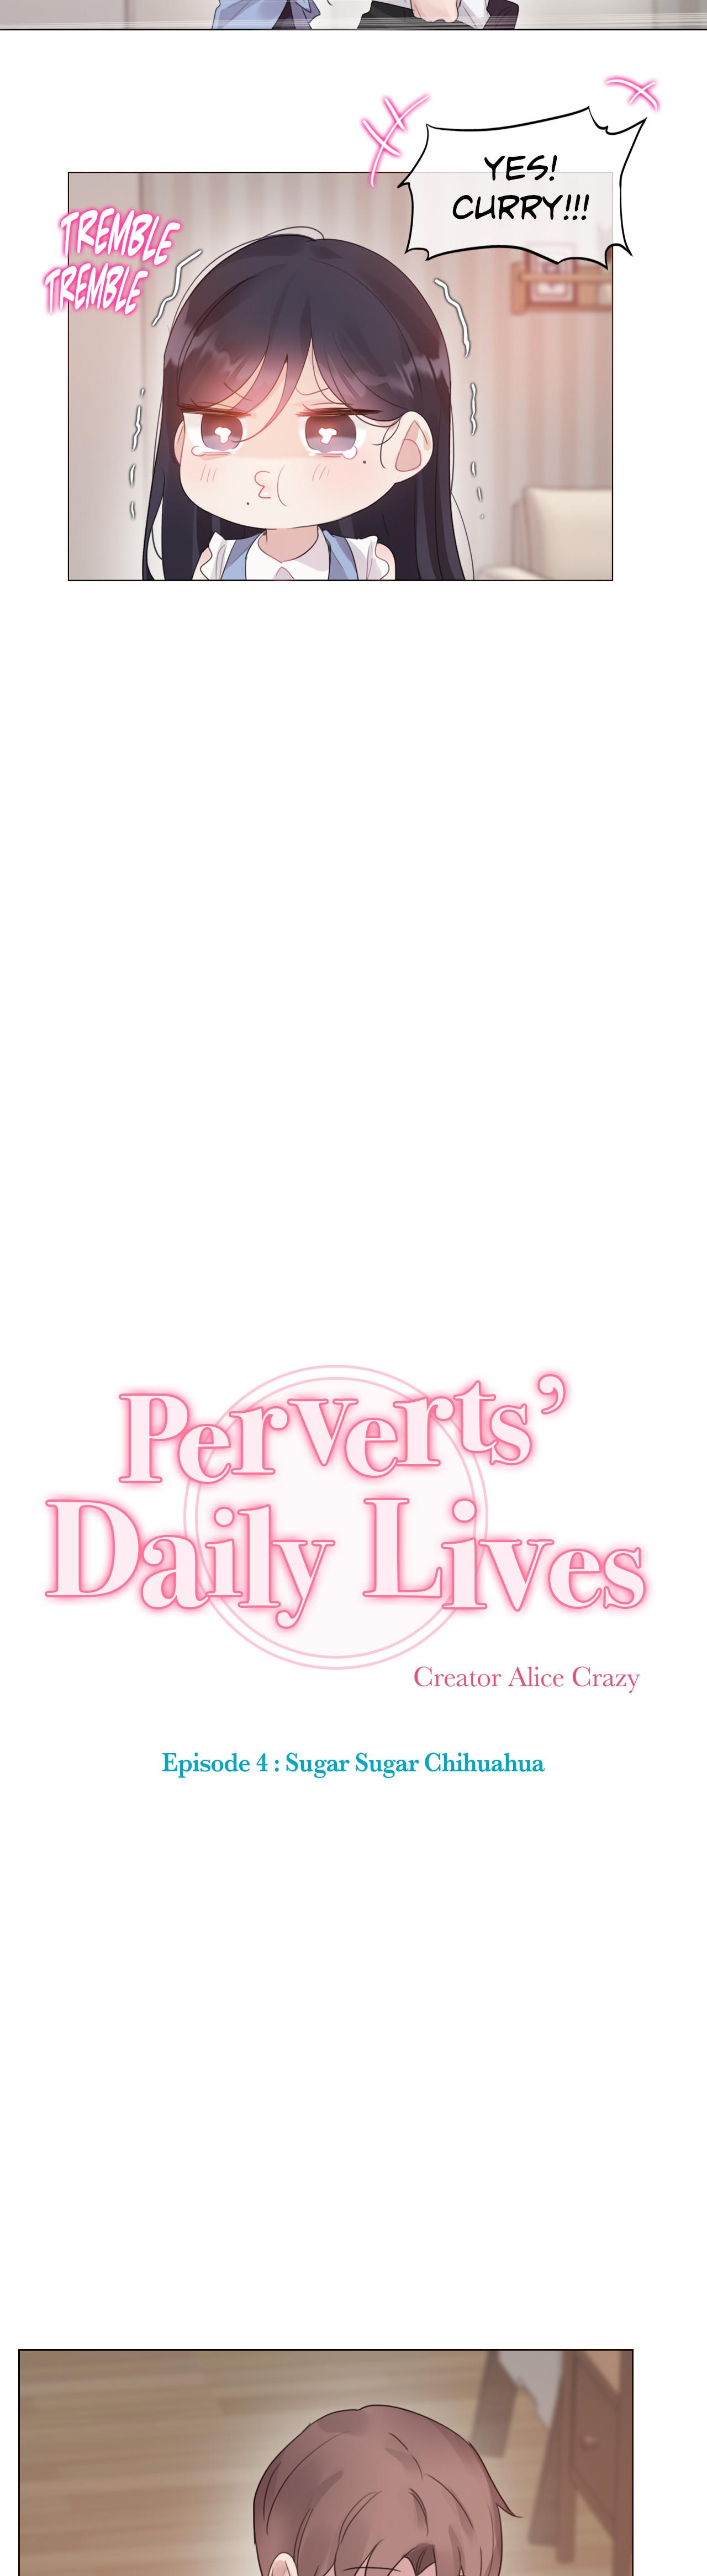 Perverts' Daily Lives Episode 4: Sugar Sugar Chihuahua 225